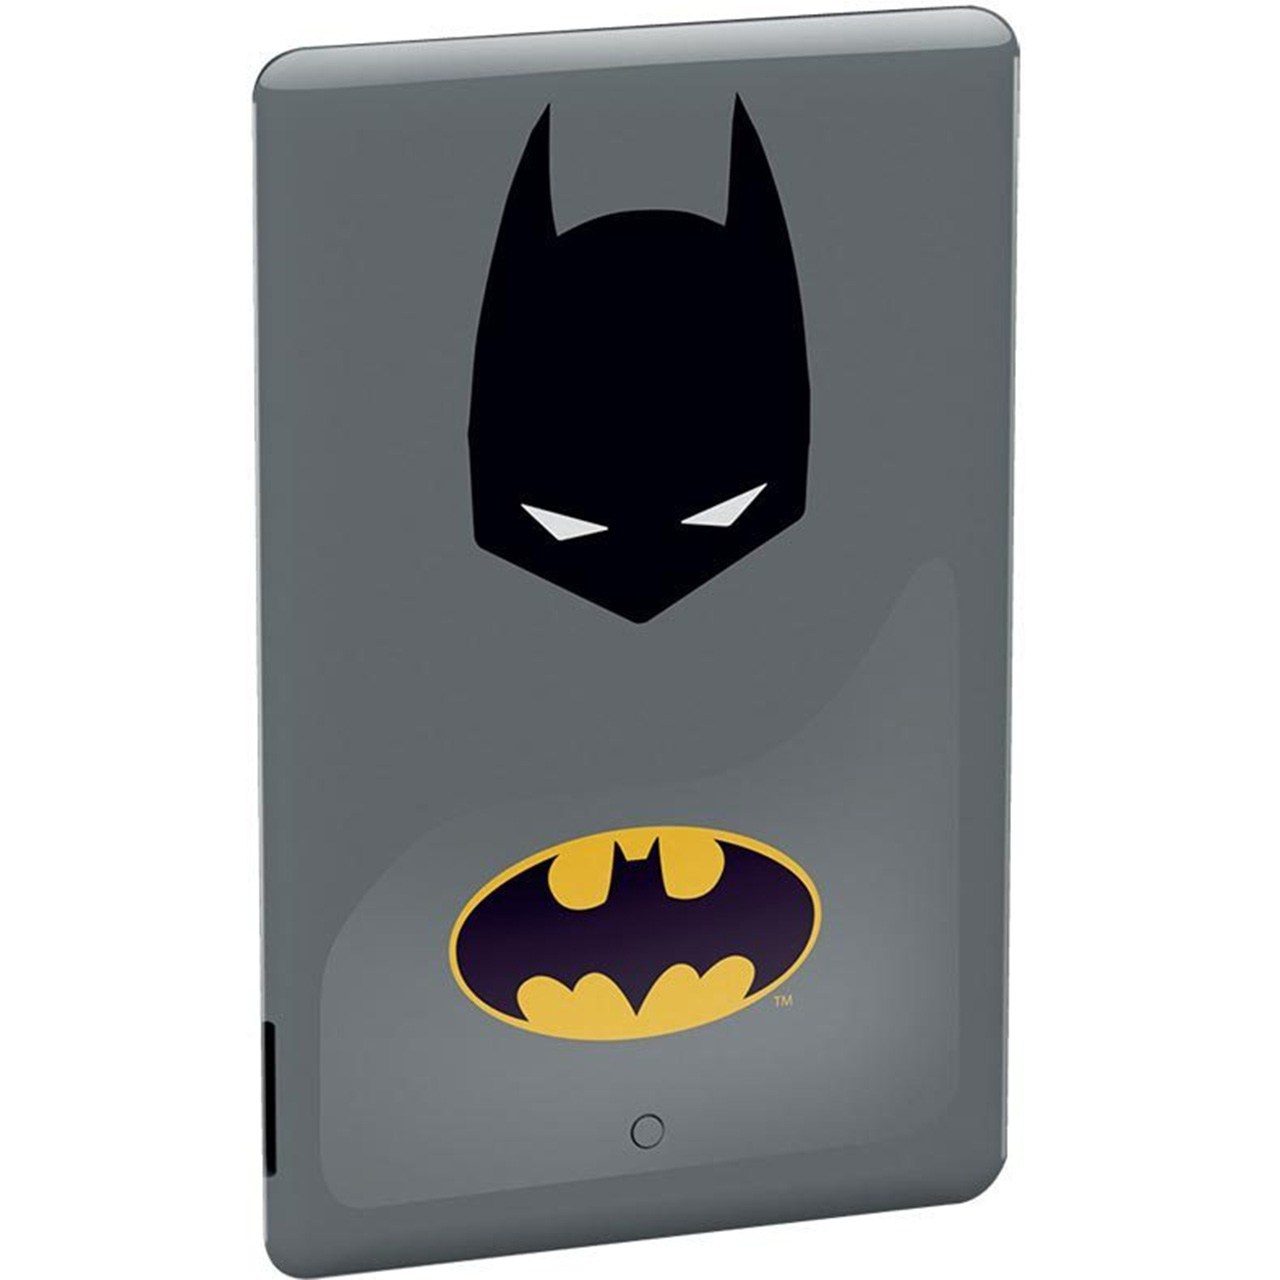 پاوربانک امتک مدل Batman Backup Battery Universal با ظرفیت 2500 میلی آمپر ساعت